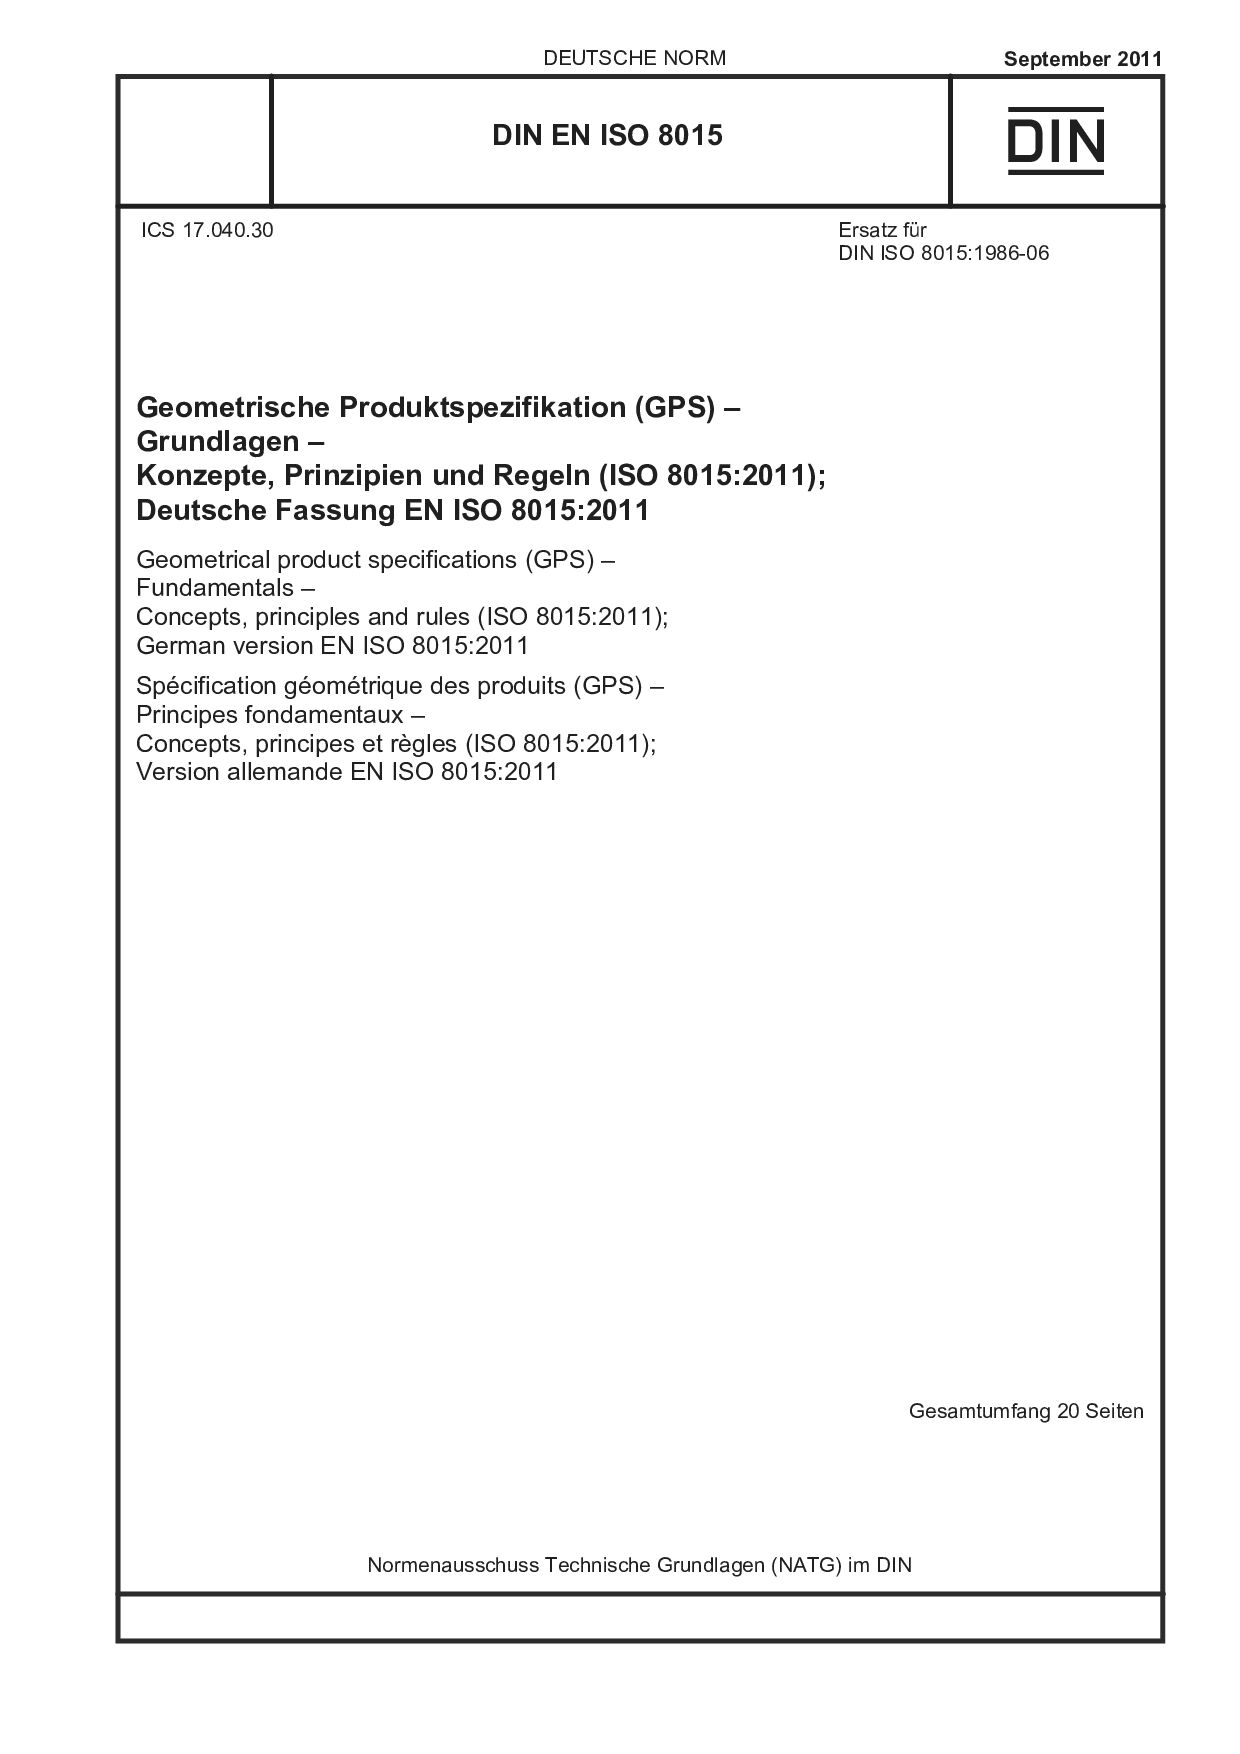 DIN EN ISO 8015:2011封面图